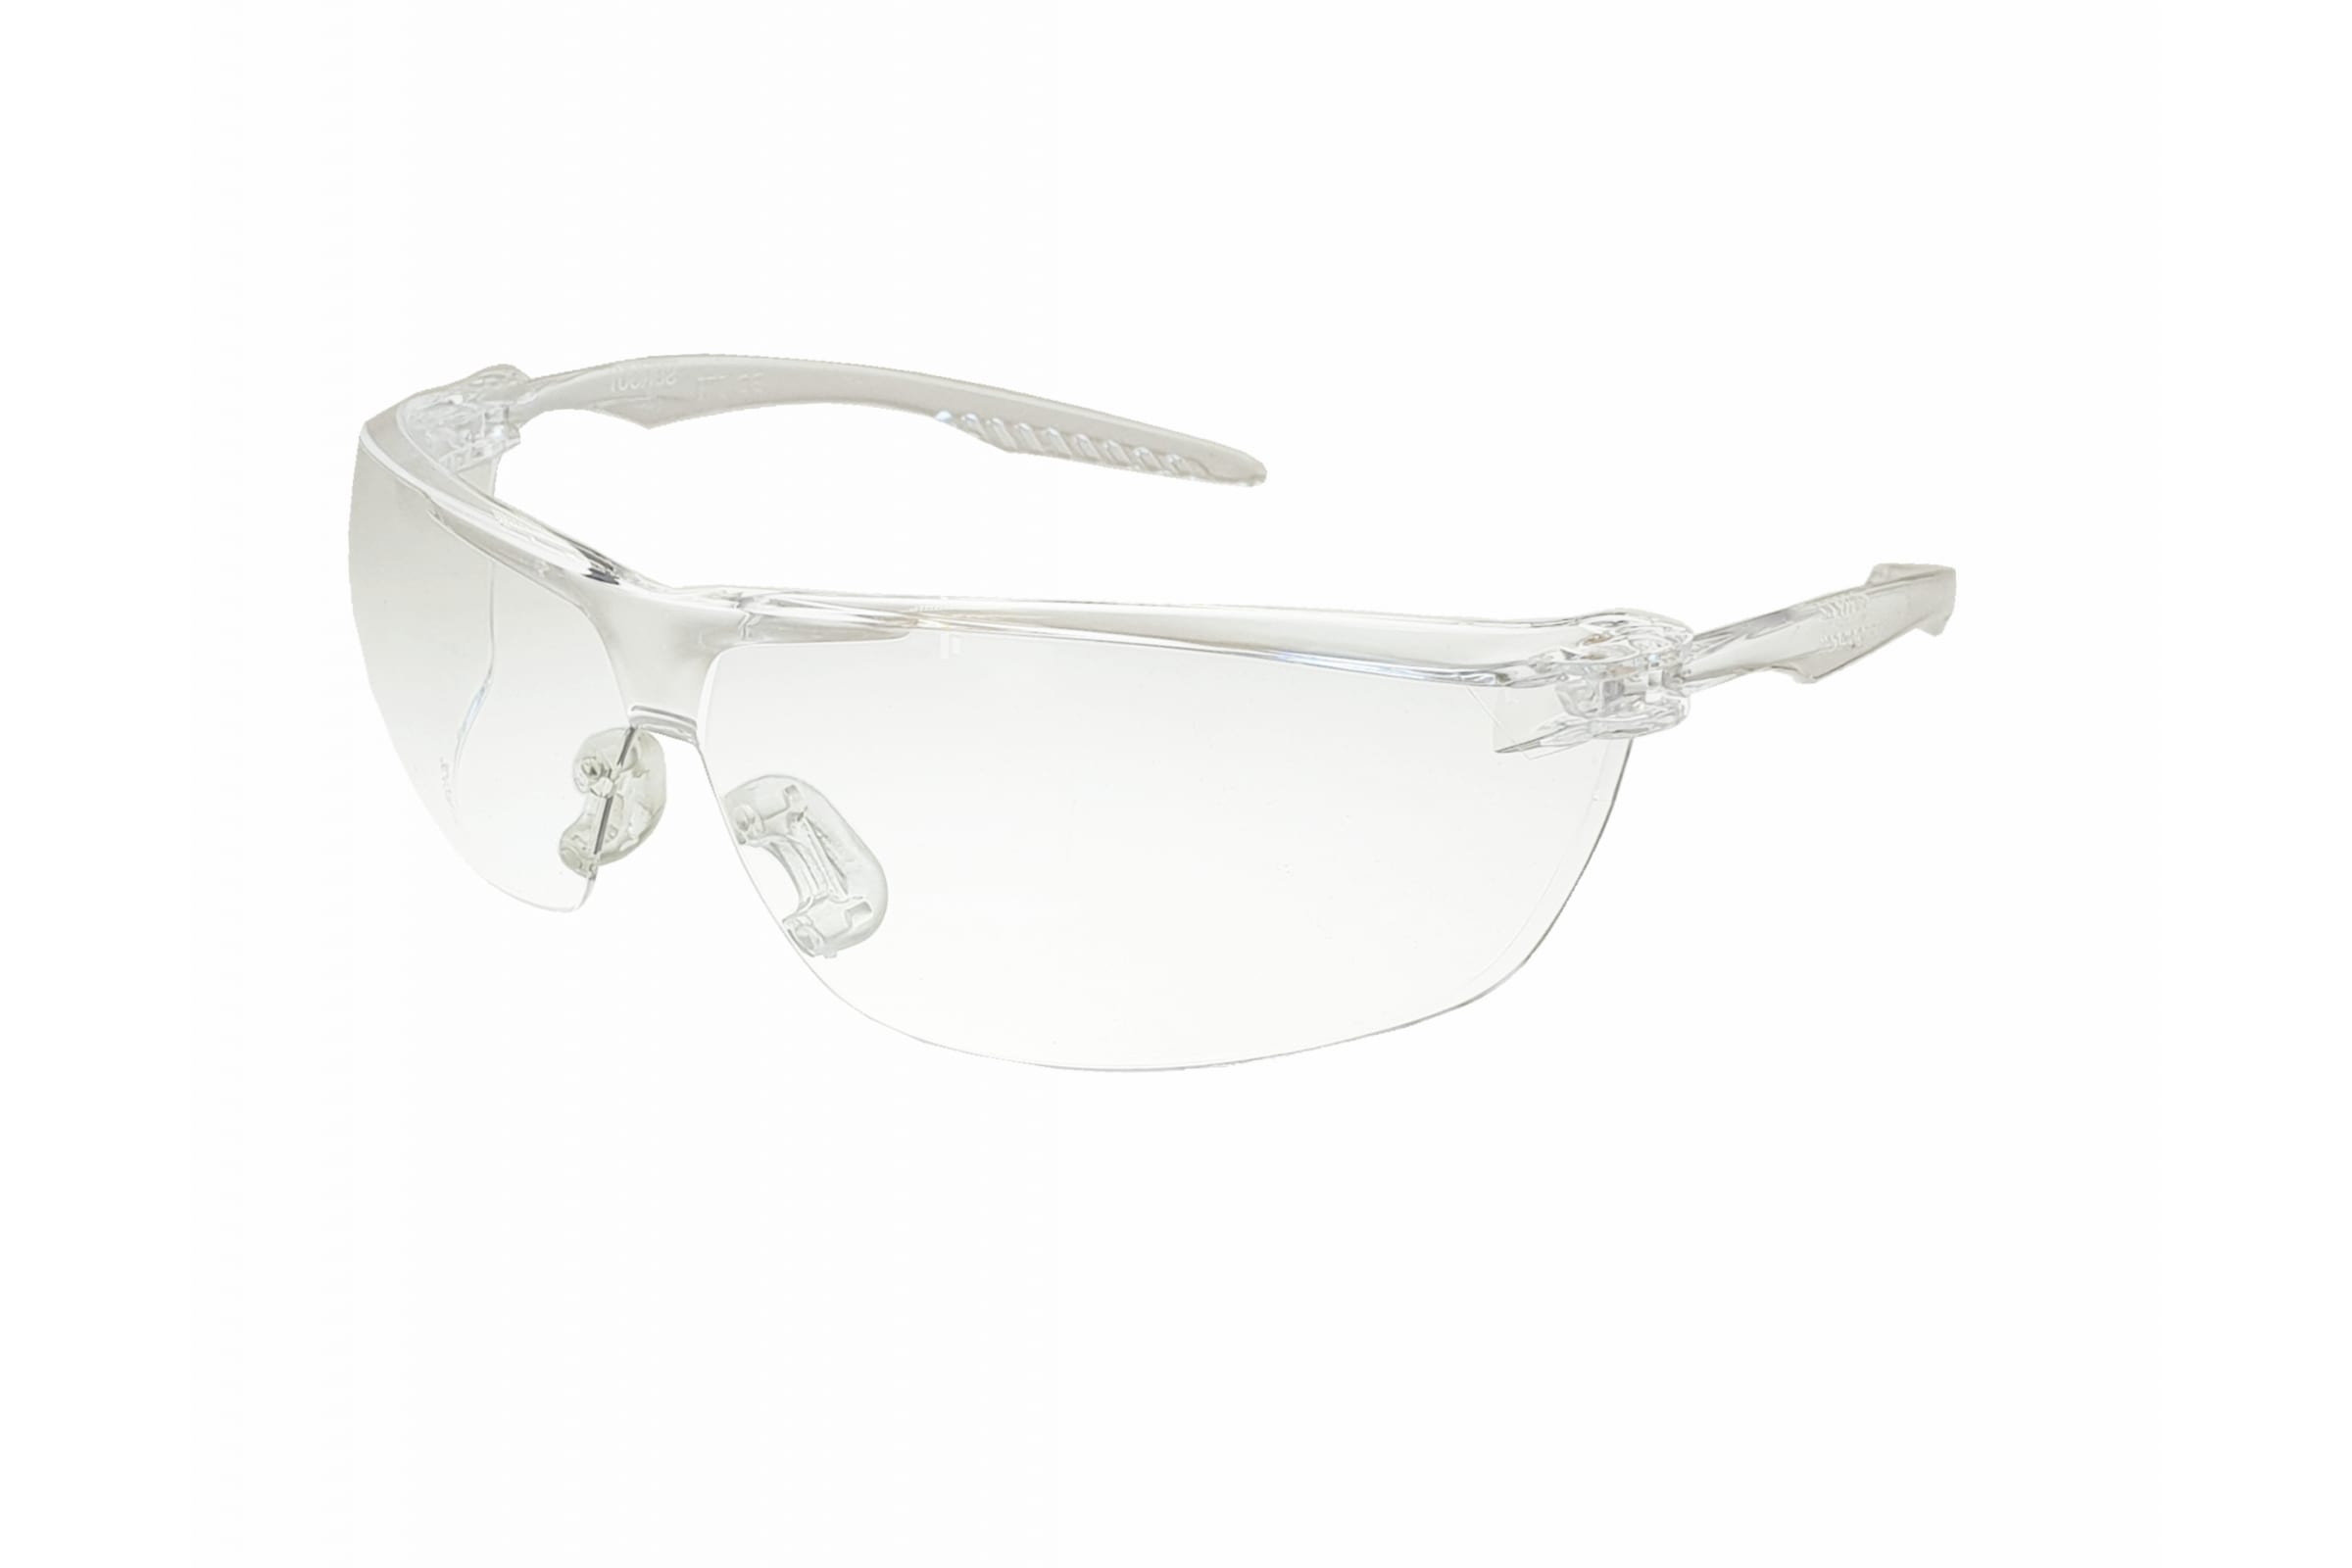 Очки защитные открытые О88 SURGUT super (2С-1,2 PC) с мягким носоупором защитные открытые очки с мягким носоупором росомз о88 surgut super 2с 1 2 pc